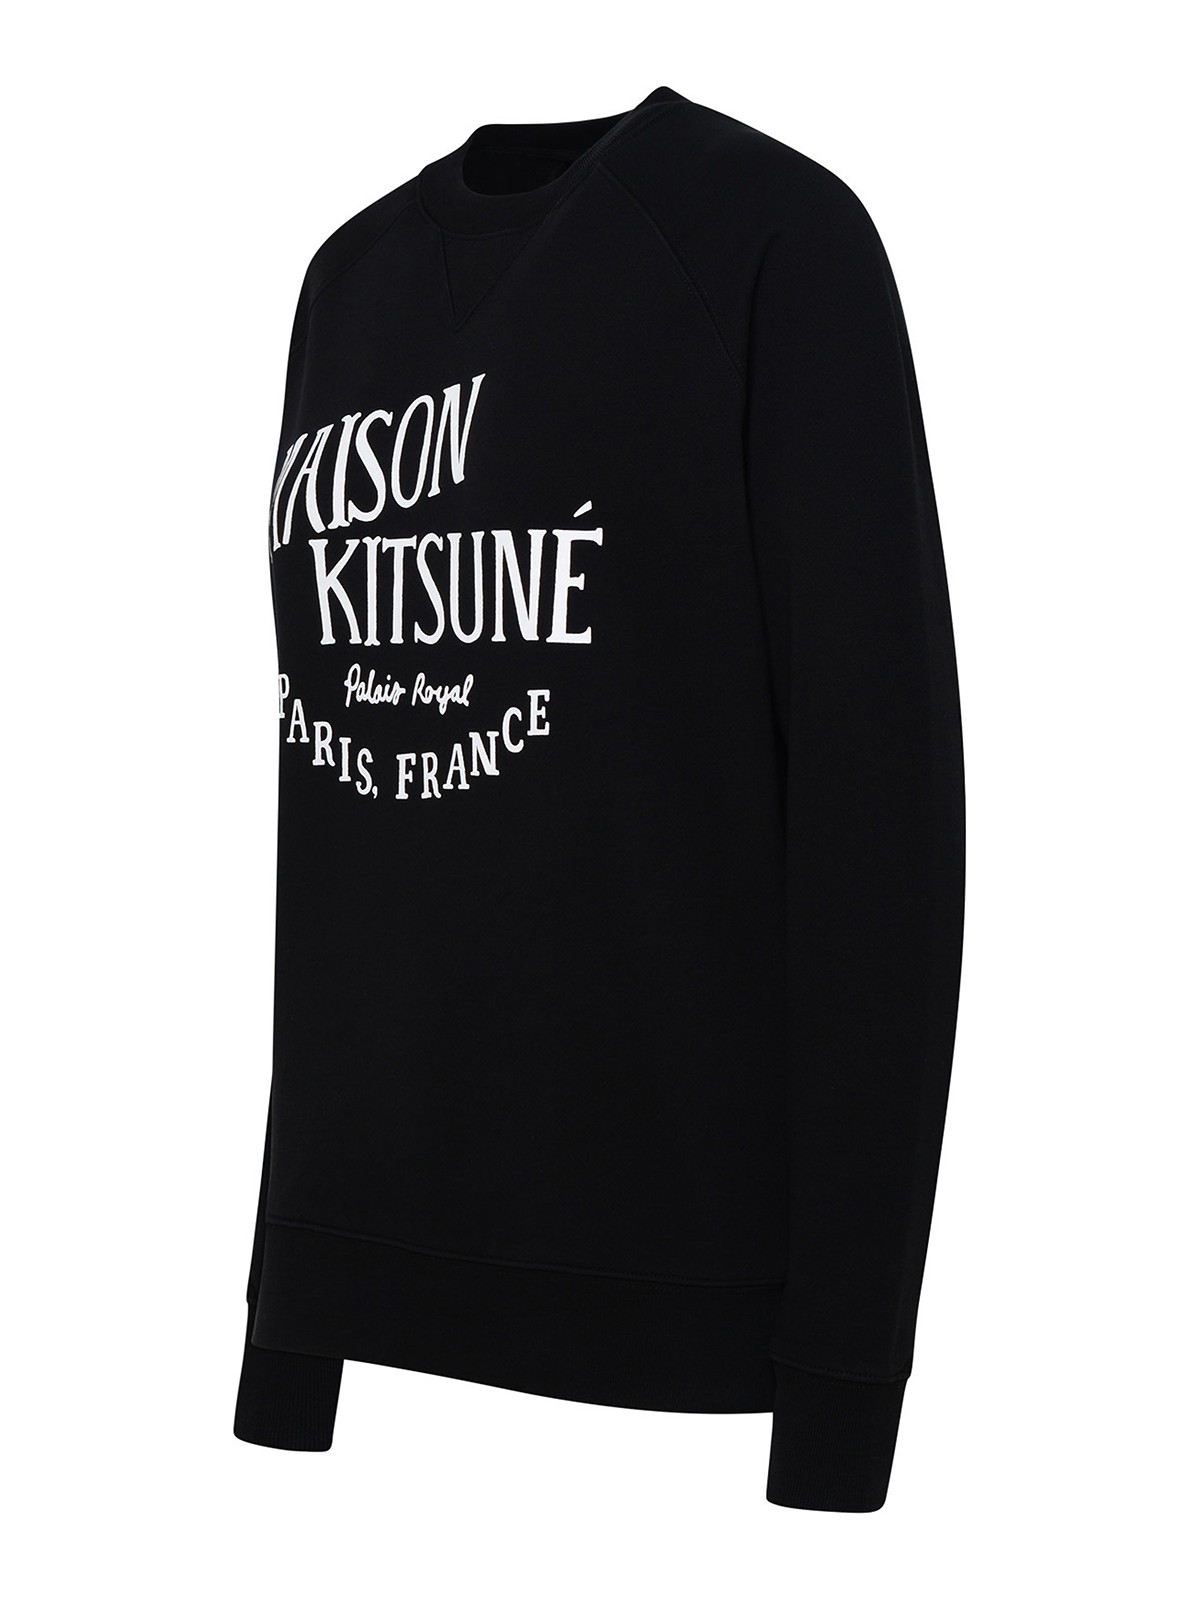 Shop Maison Kitsuné Black Cotton Sweatshirt